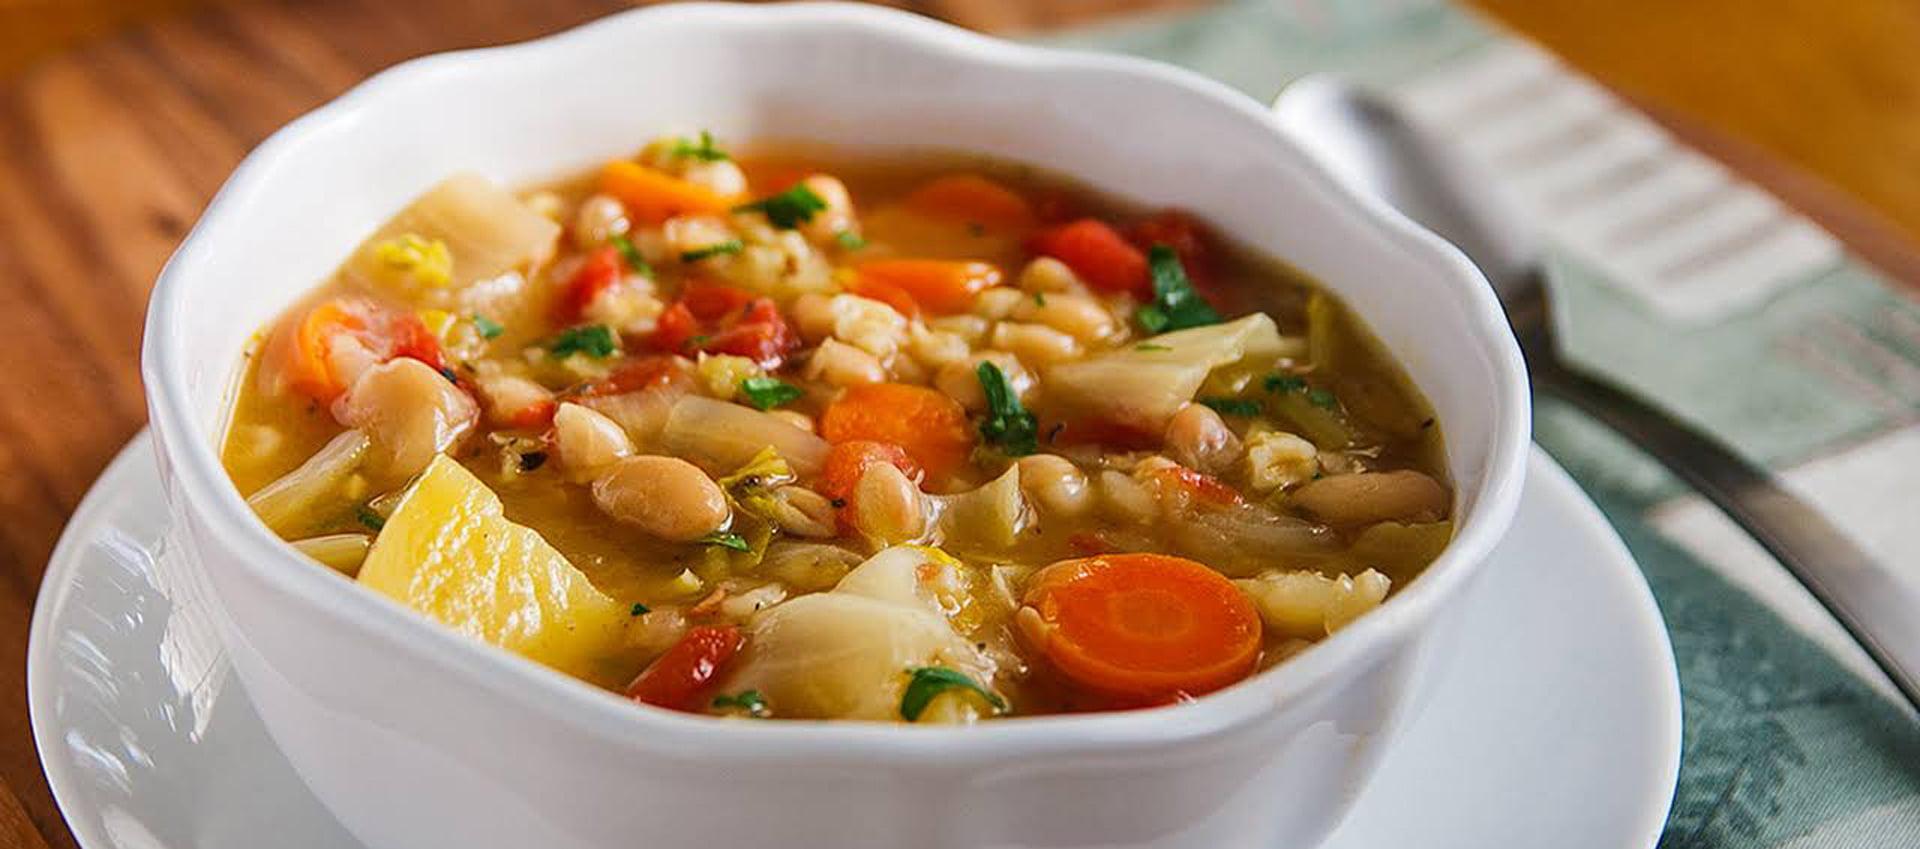 سوپ کلم برگ؛ غذایی سبک و انرژی زا در افطار! + طرز تهیه